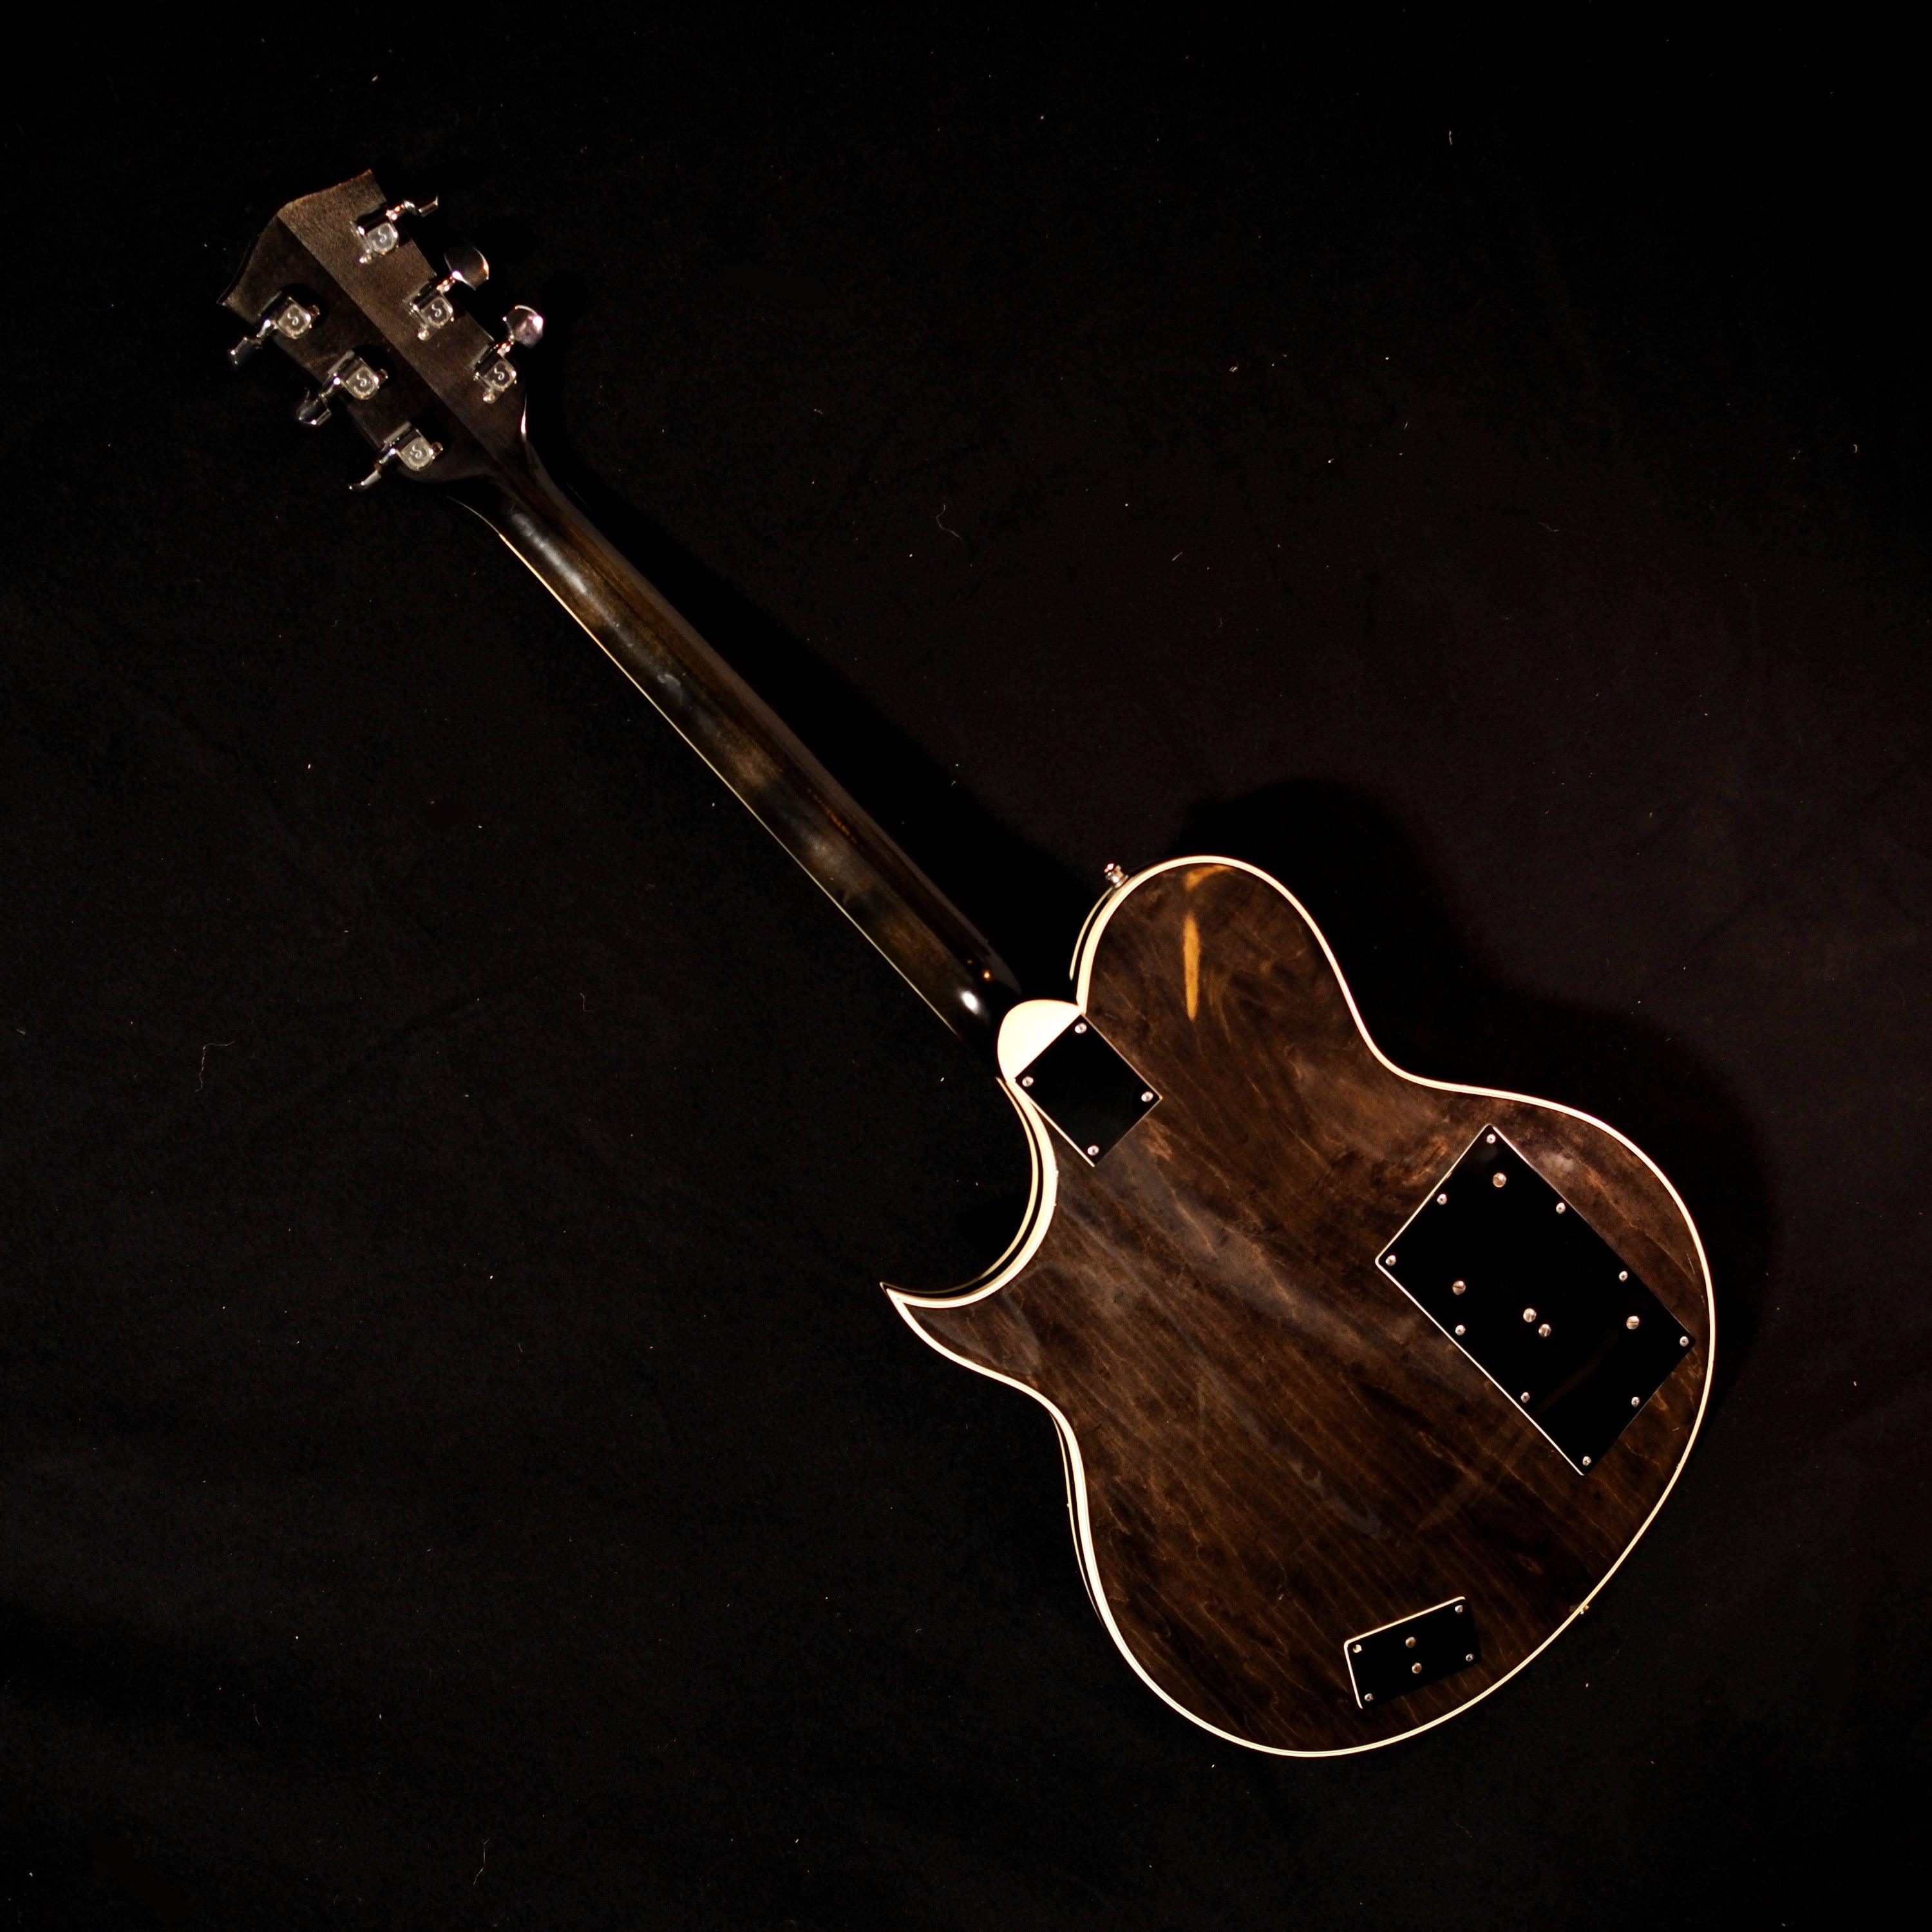 Gretsch 7681 Chet Atkins Super Axe from 1979 - wurst.guitars